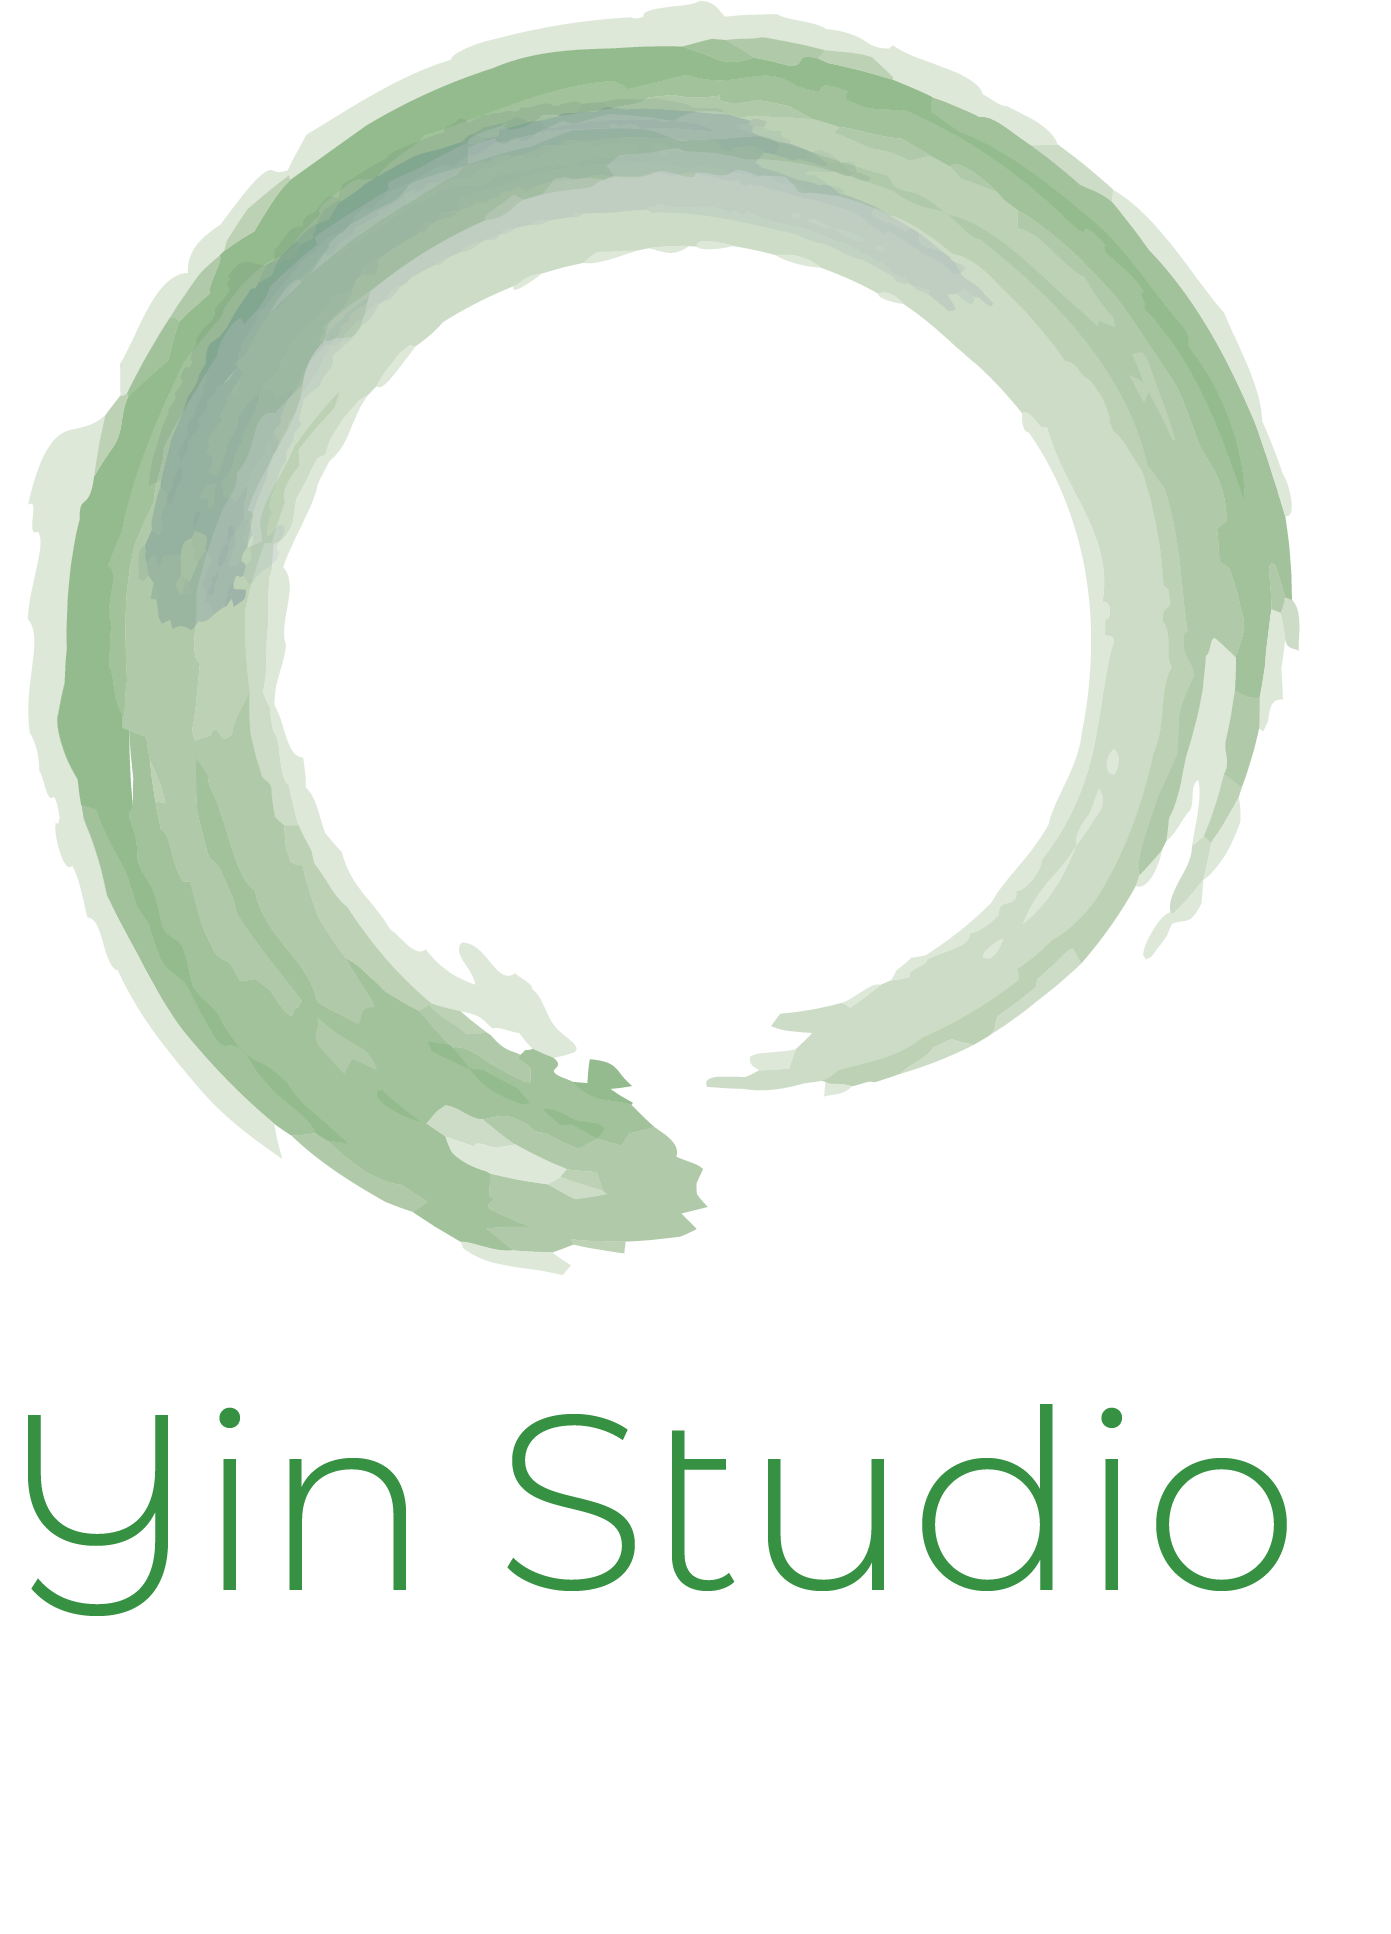 Yin Studio